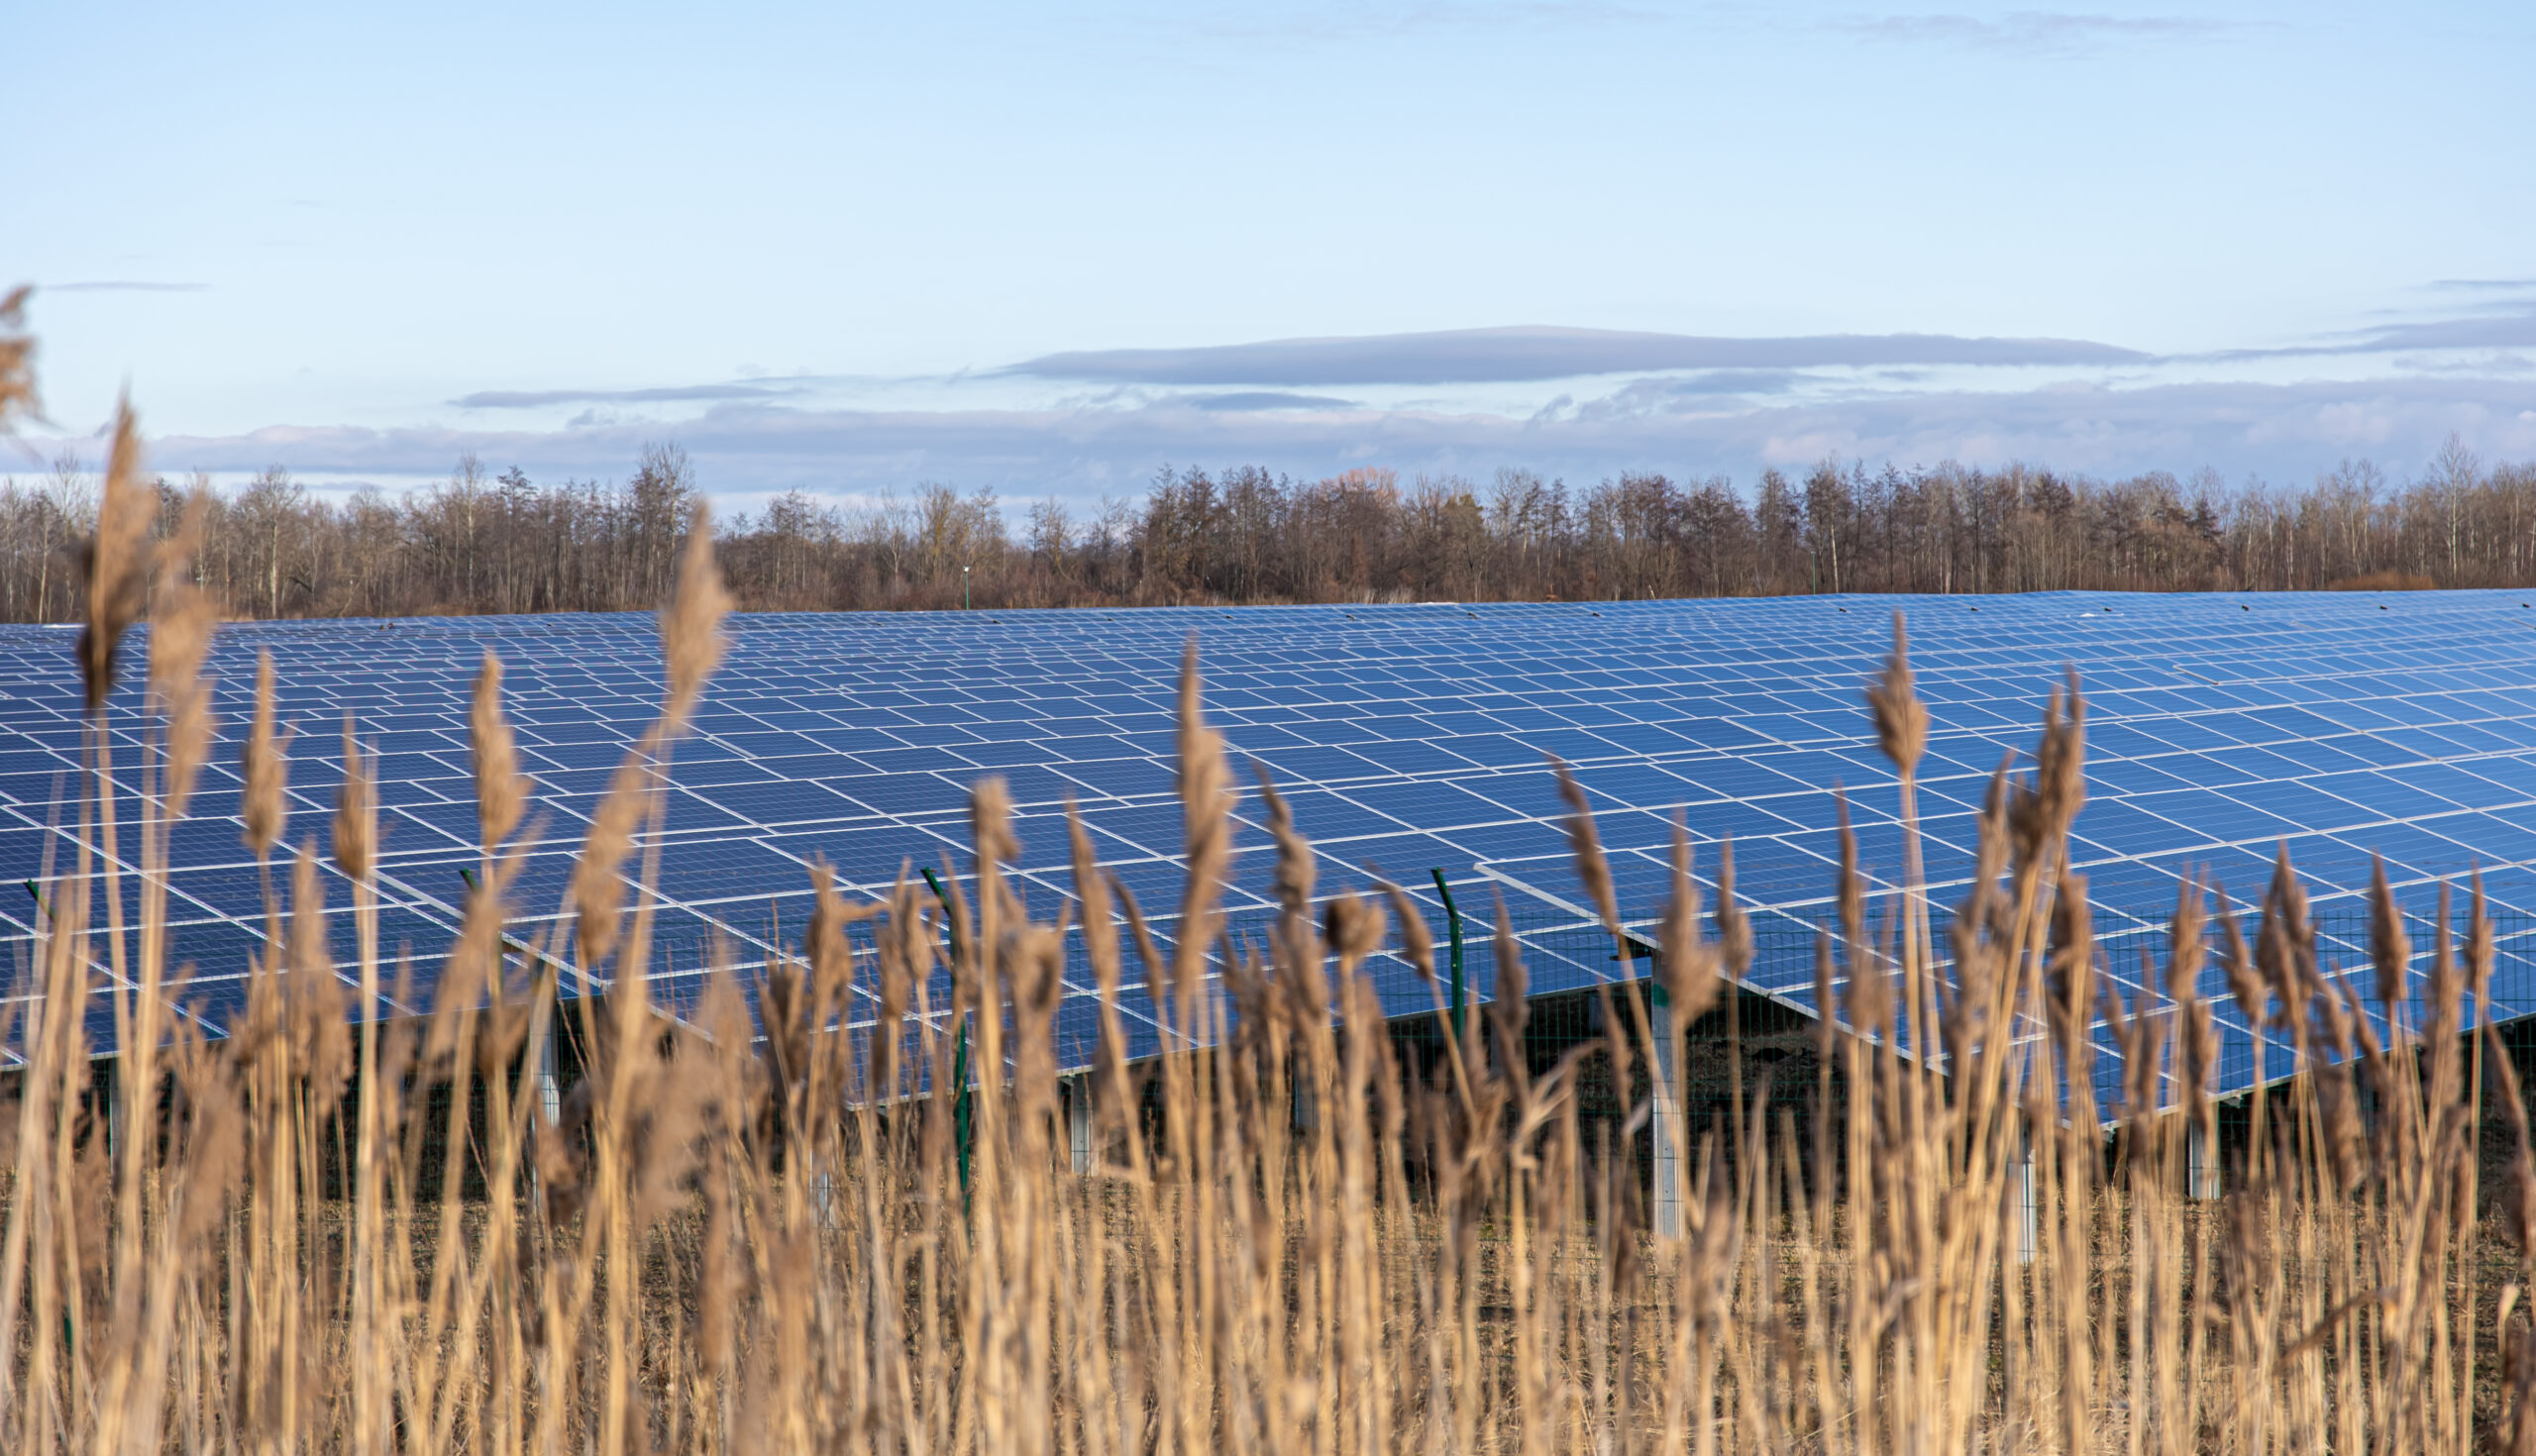 Solarenergie in der Landwirtschaft: Neue Perspektiven und Chancen